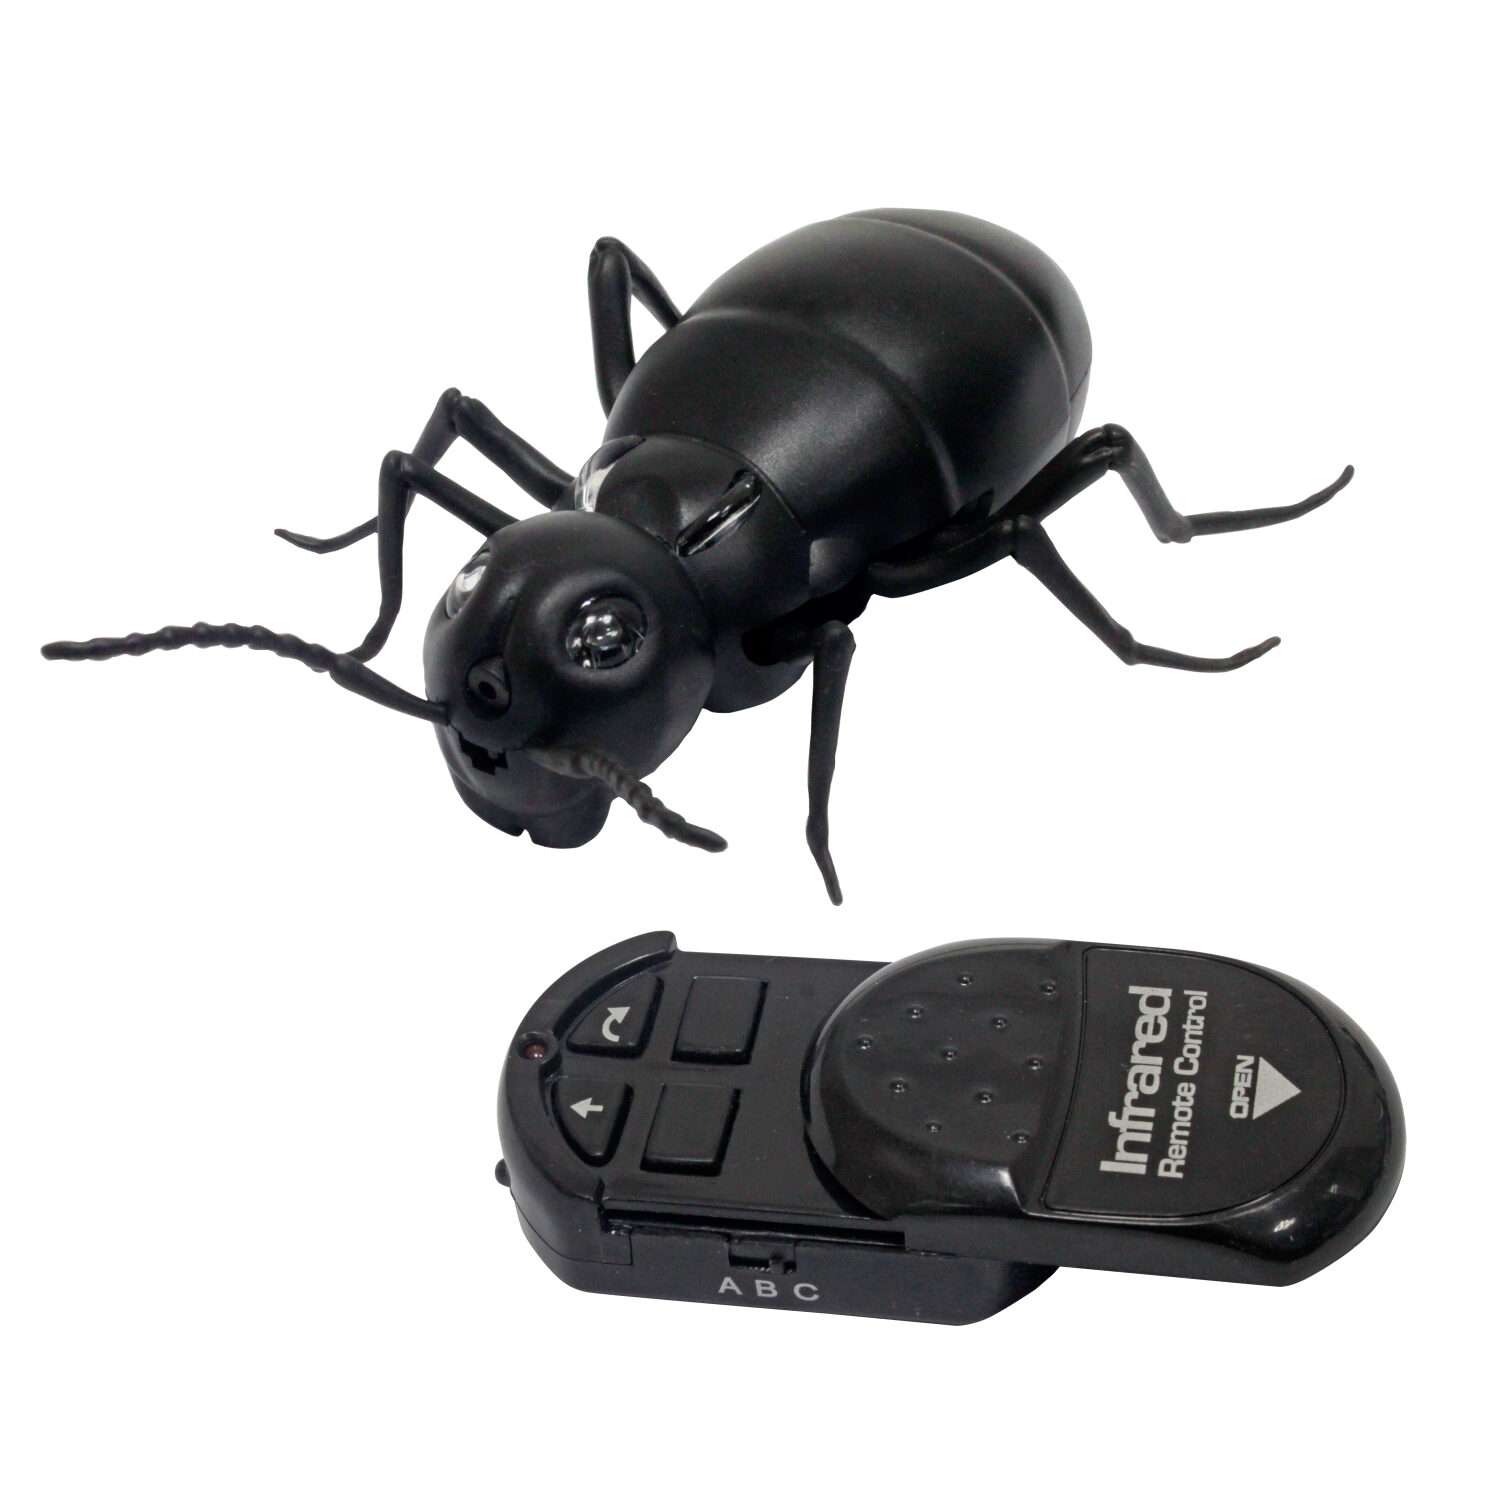 Интерактивная игрушка Robo Life Робо-муравей на ИК управлении со световыми эффектами - фото 2